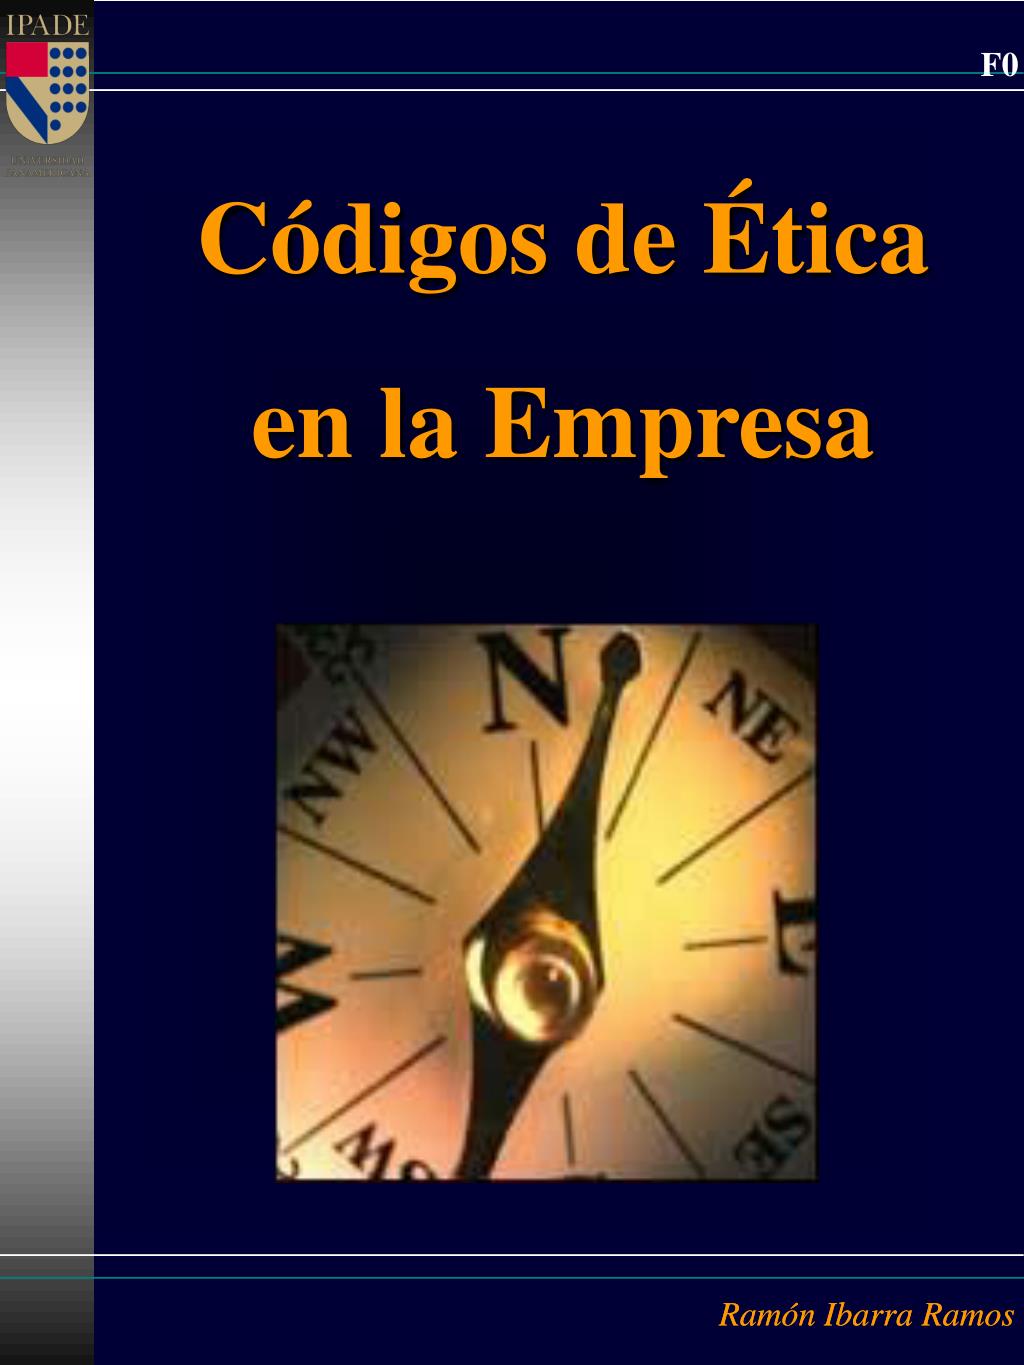 PPT - Códigos de Ética en la Empresa PowerPoint Presentation, free download  - ID:399896